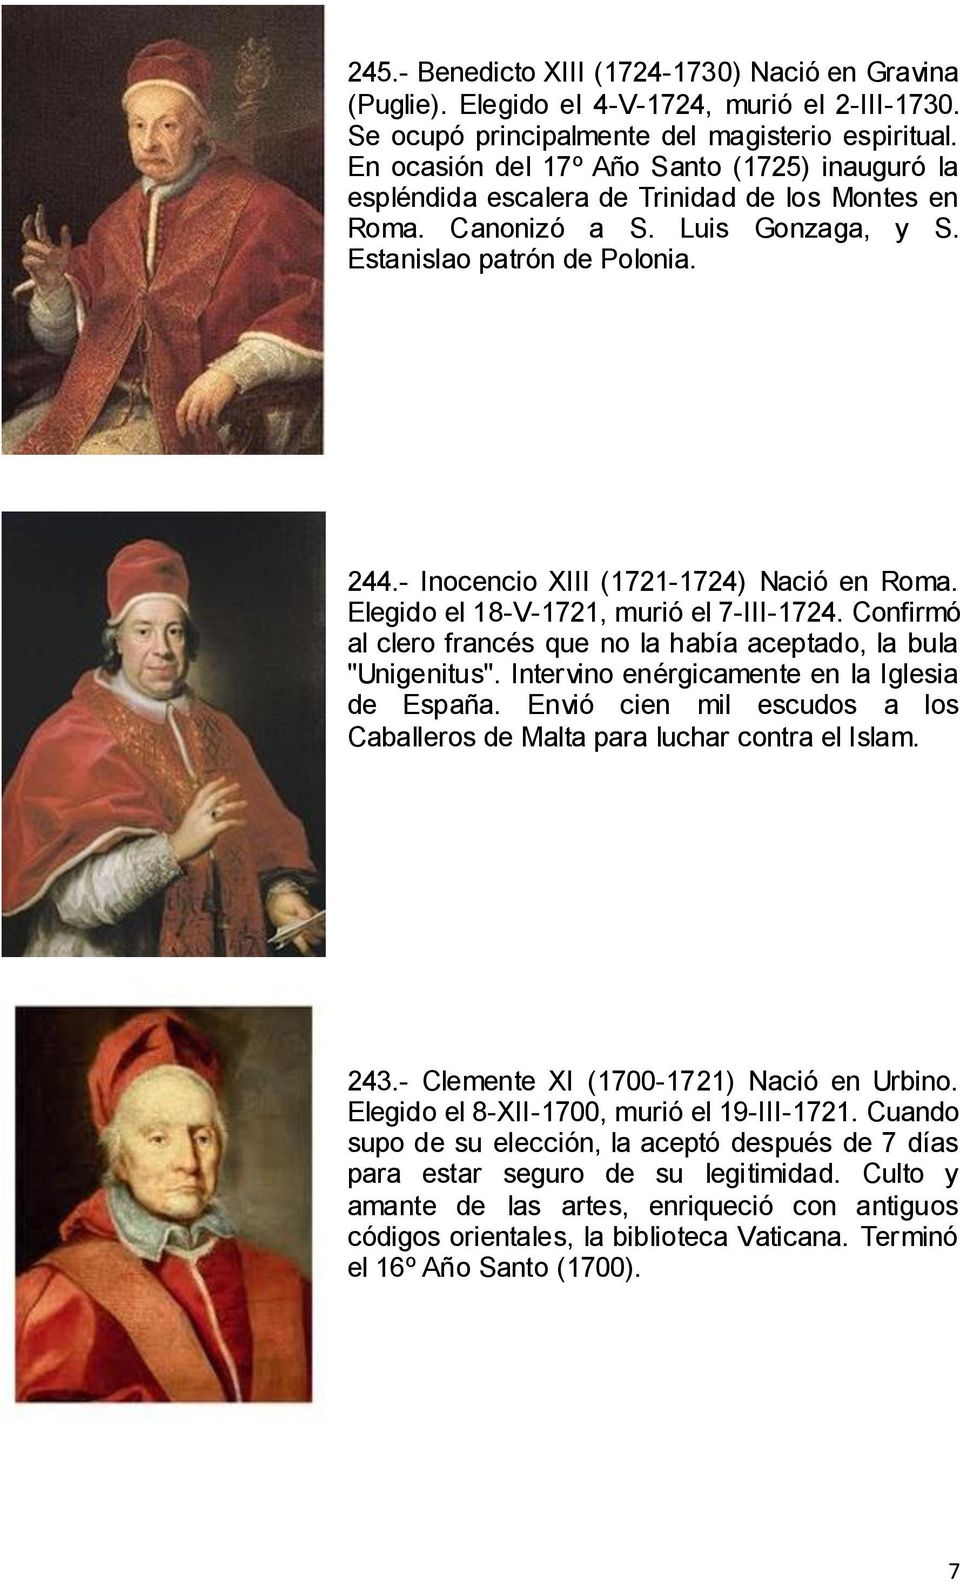 - Inocencio XIII (1721-1724) Nació en Roma. Elegido el 18-V-1721, murió el 7-III-1724. Confirmó al clero francés que no la había aceptado, la bula "Unigenitus".